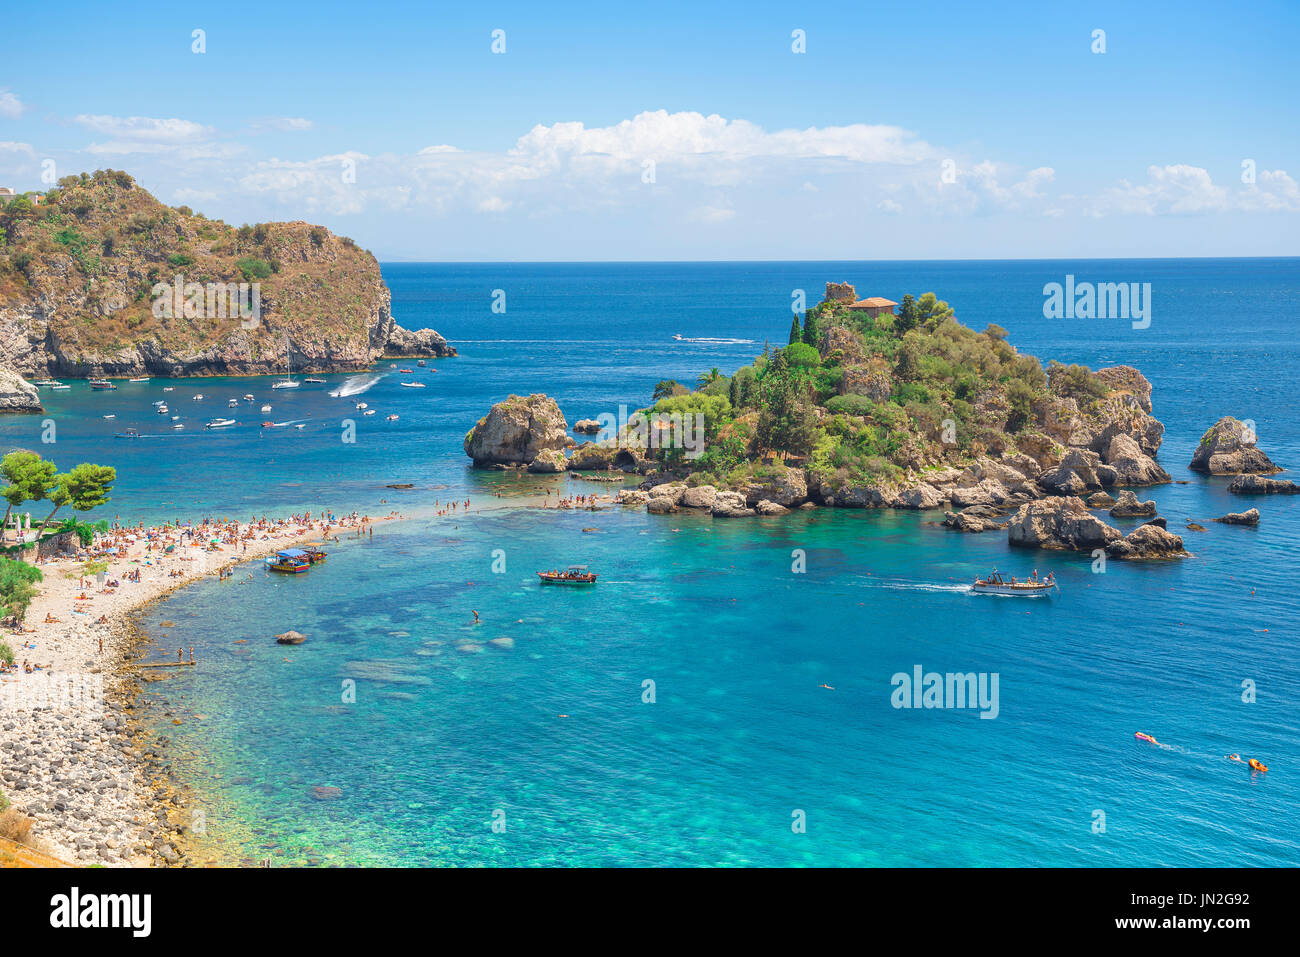 Isola Bella Sicile, vue en été de la plage de Mazzaro près de Taormina, Sicile, montrant la petite île connue sous le nom d'Isola Bella - belle île. Banque D'Images